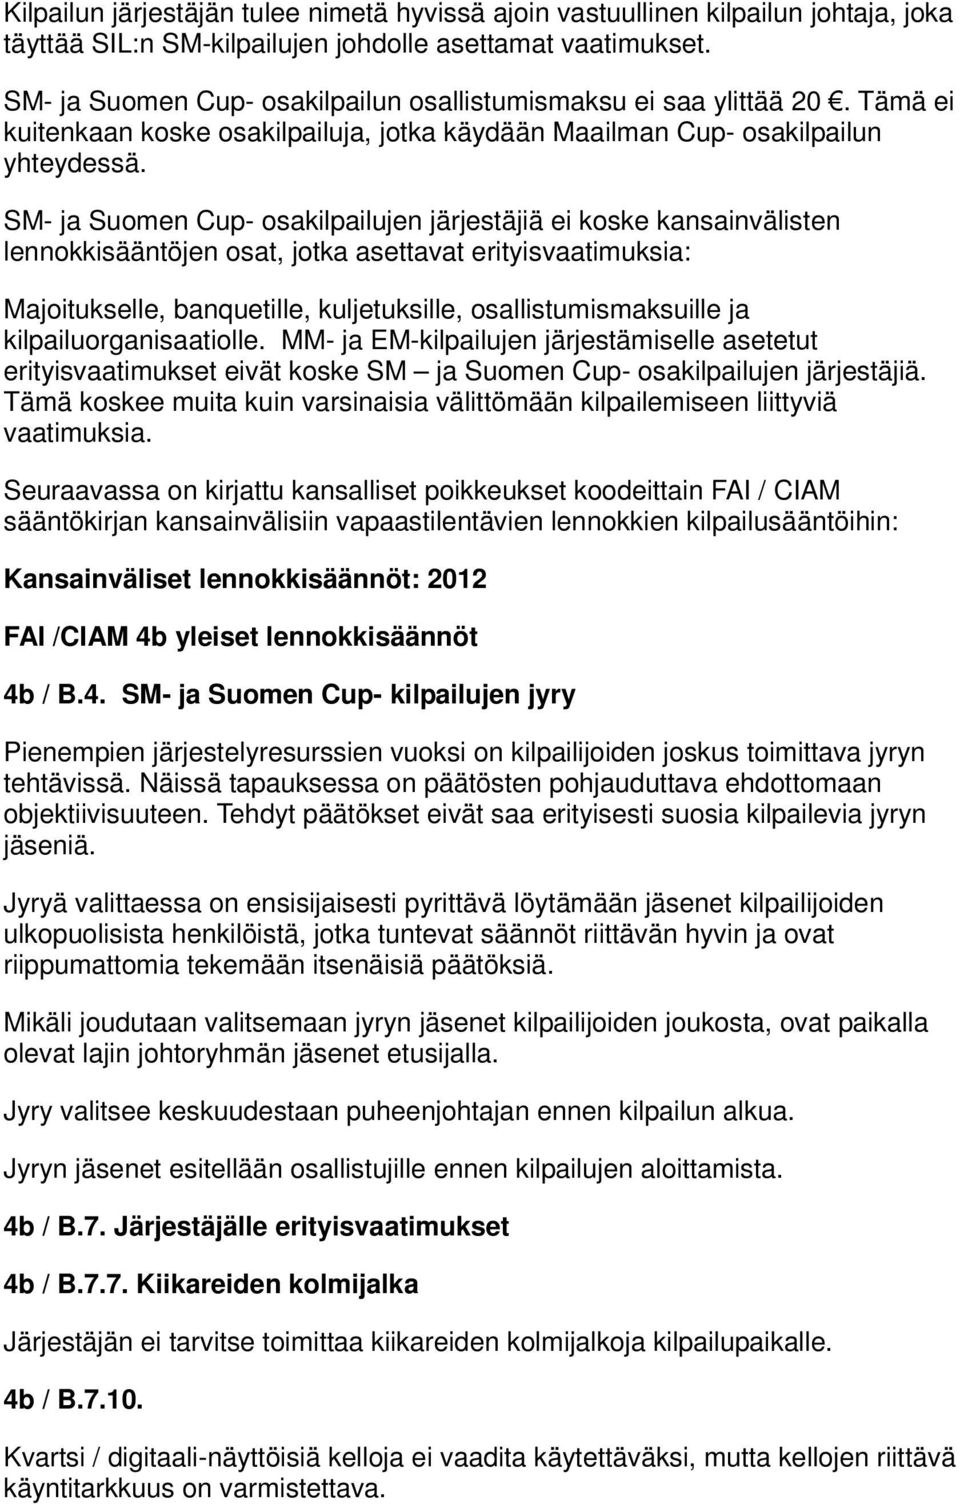 SM- ja Suomen Cup- osakilpailujen järjestäjiä ei koske kansainvälisten lennokkisääntöjen osat, jotka asettavat erityisvaatimuksia: Majoitukselle, banquetille, kuljetuksille, osallistumismaksuille ja